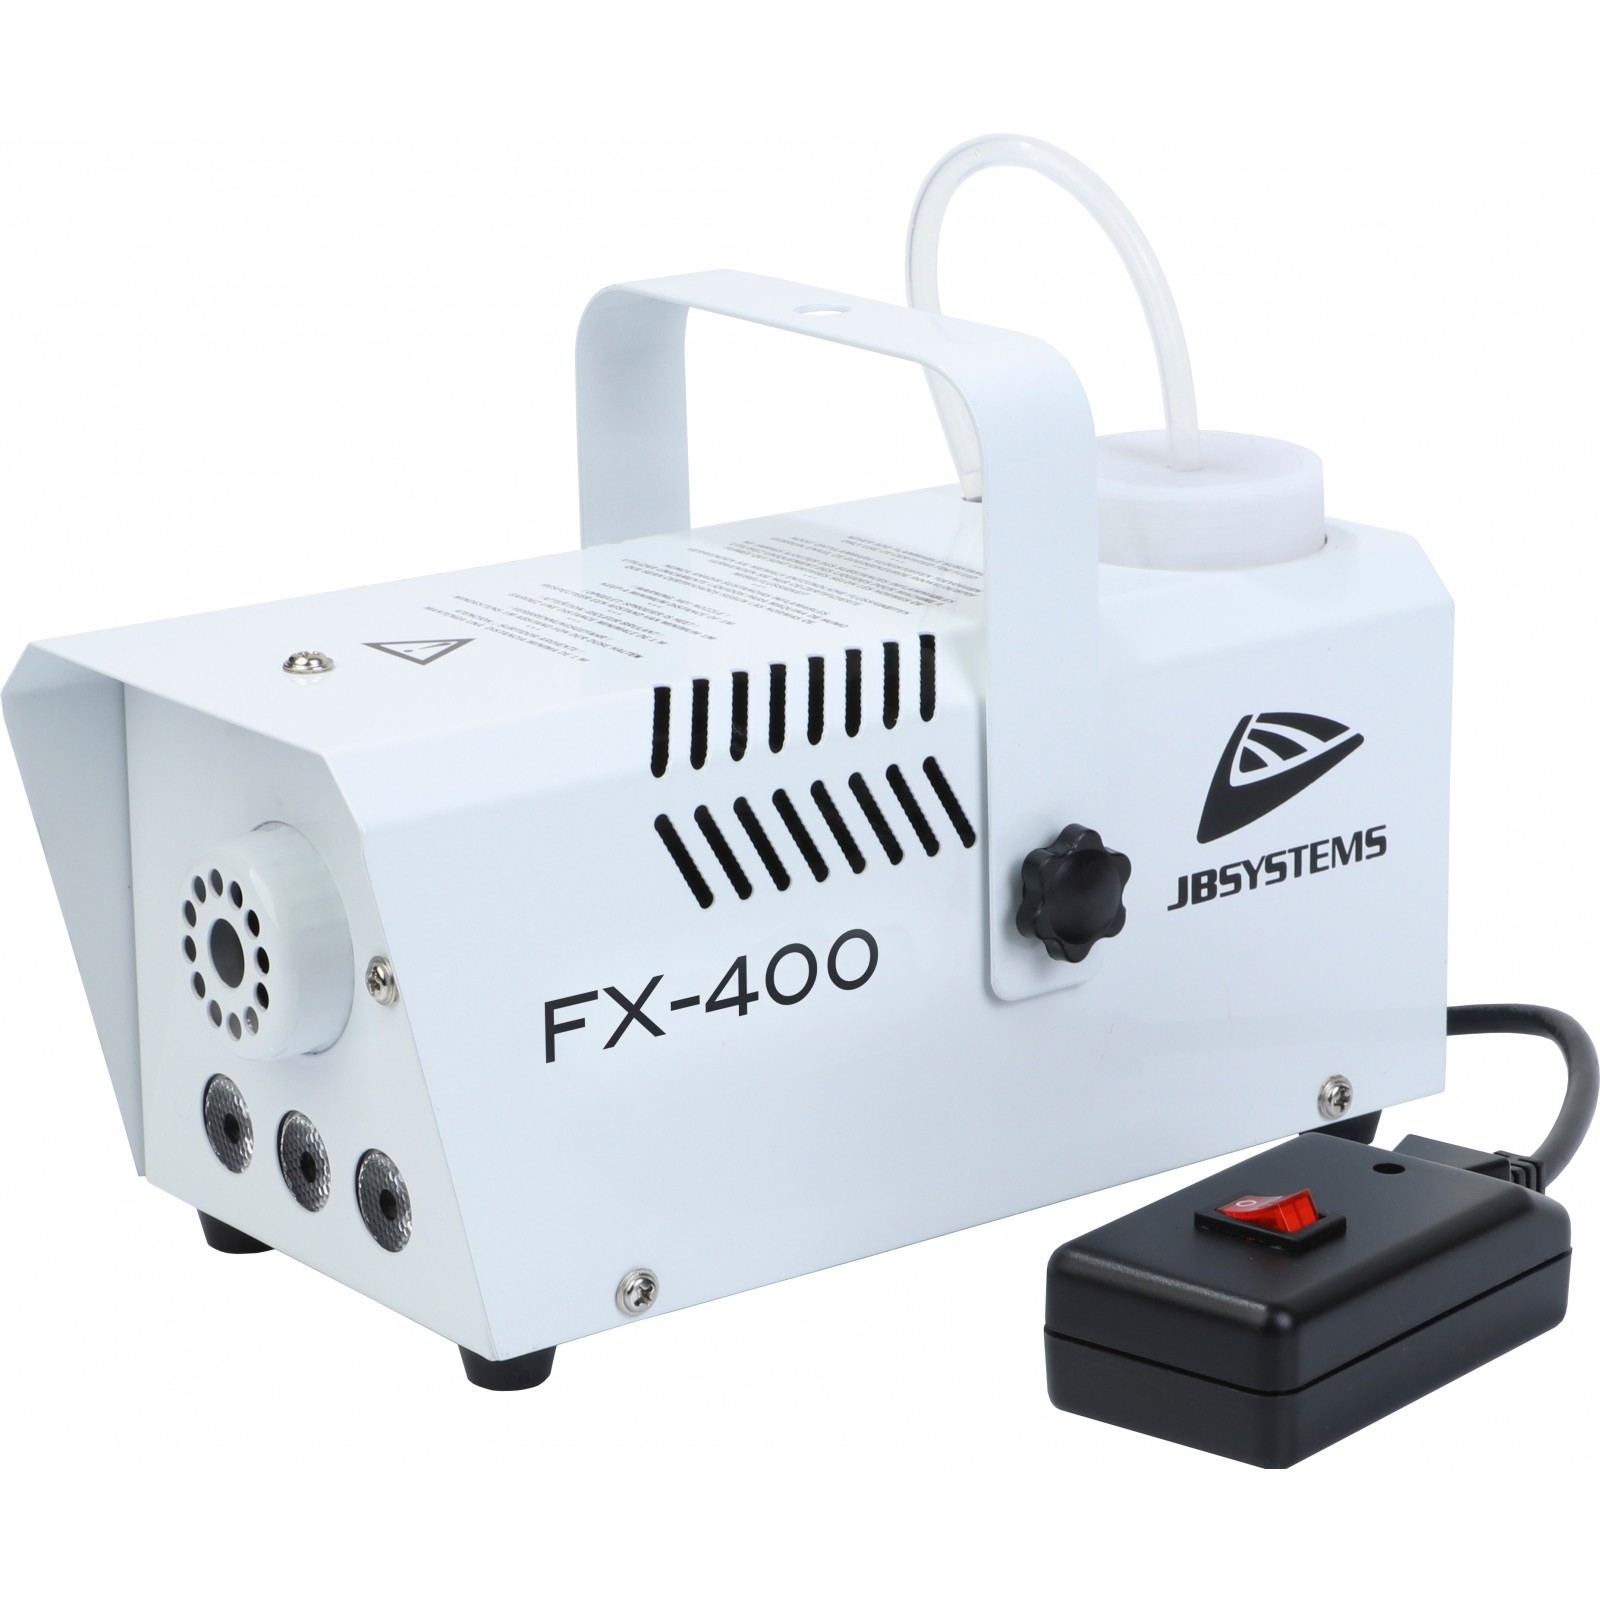 FX-400, rookmachine 400W amber LEDs, zwart